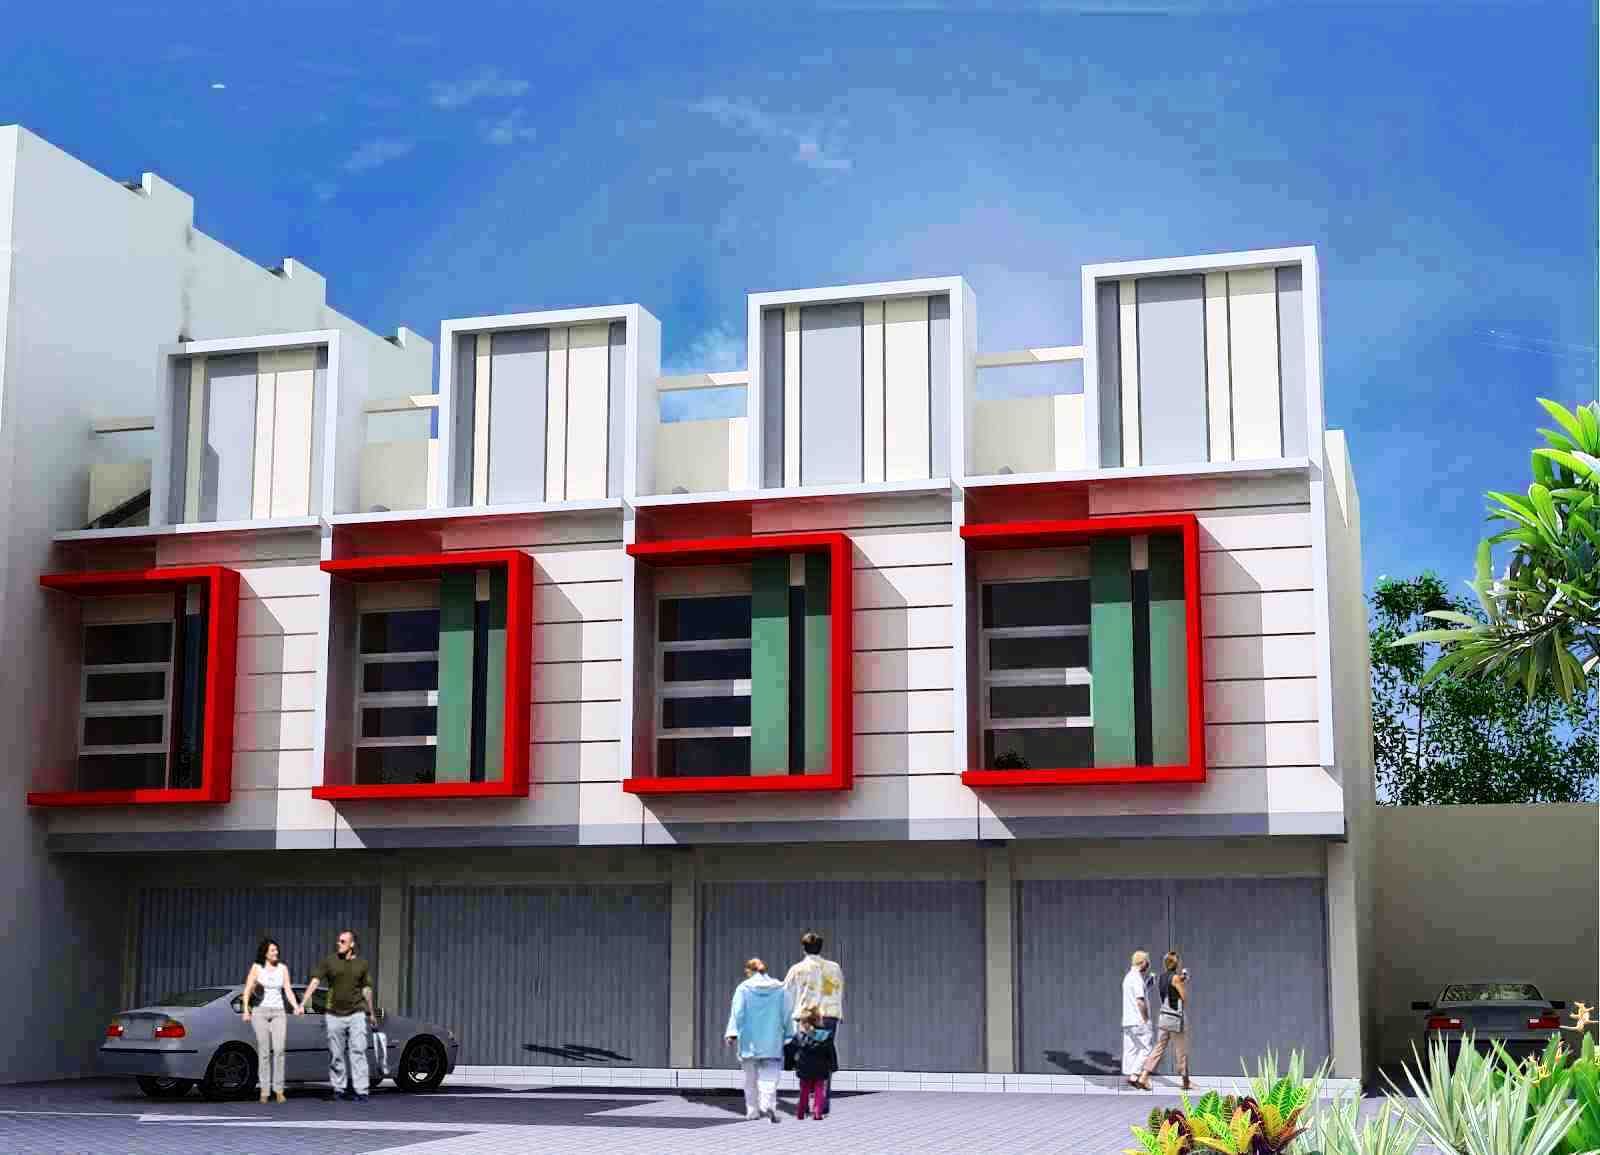 44 Ide Model Rumah Ruko  2019 Terlengkap Zaman Kontruksi